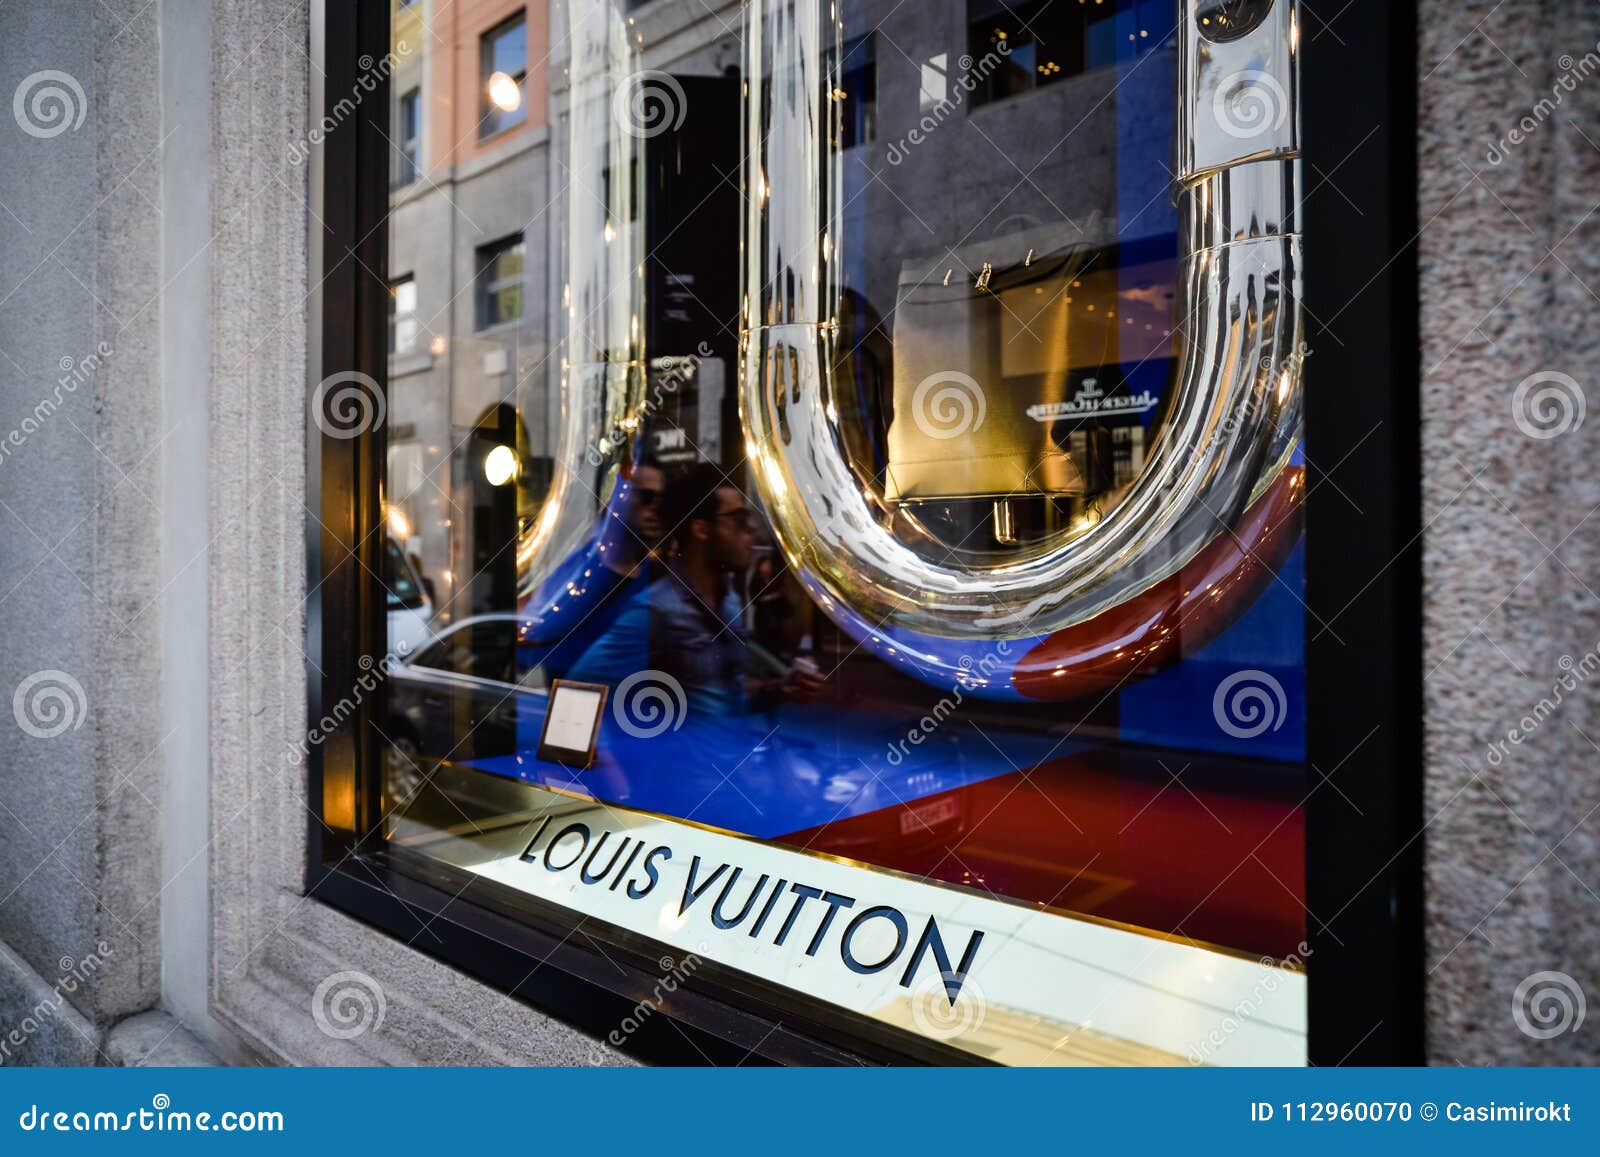 Milan, Italy - September 24, 2017: Louis Vuitton Store In Milan Editorial Image - Image of ...